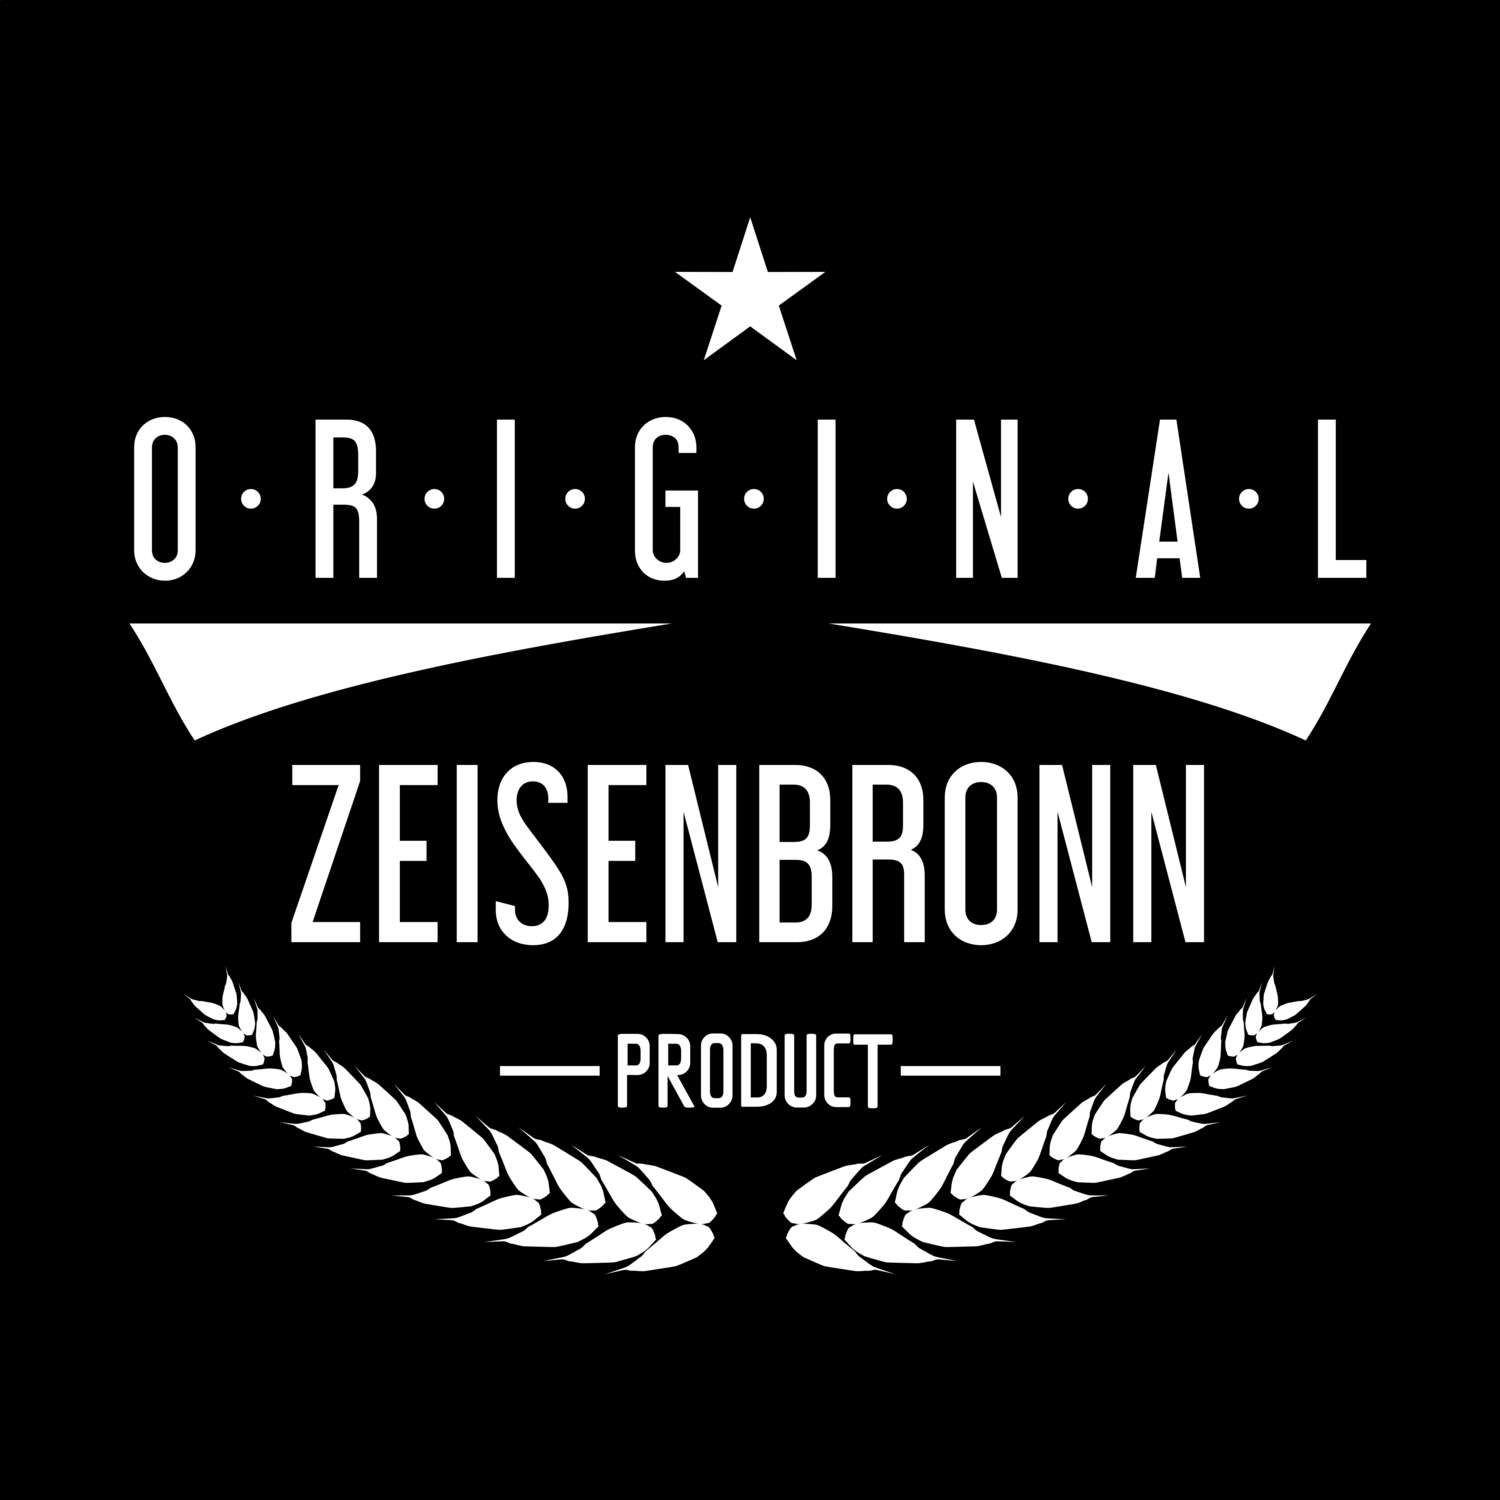 Zeisenbronn T-Shirt »Original Product«